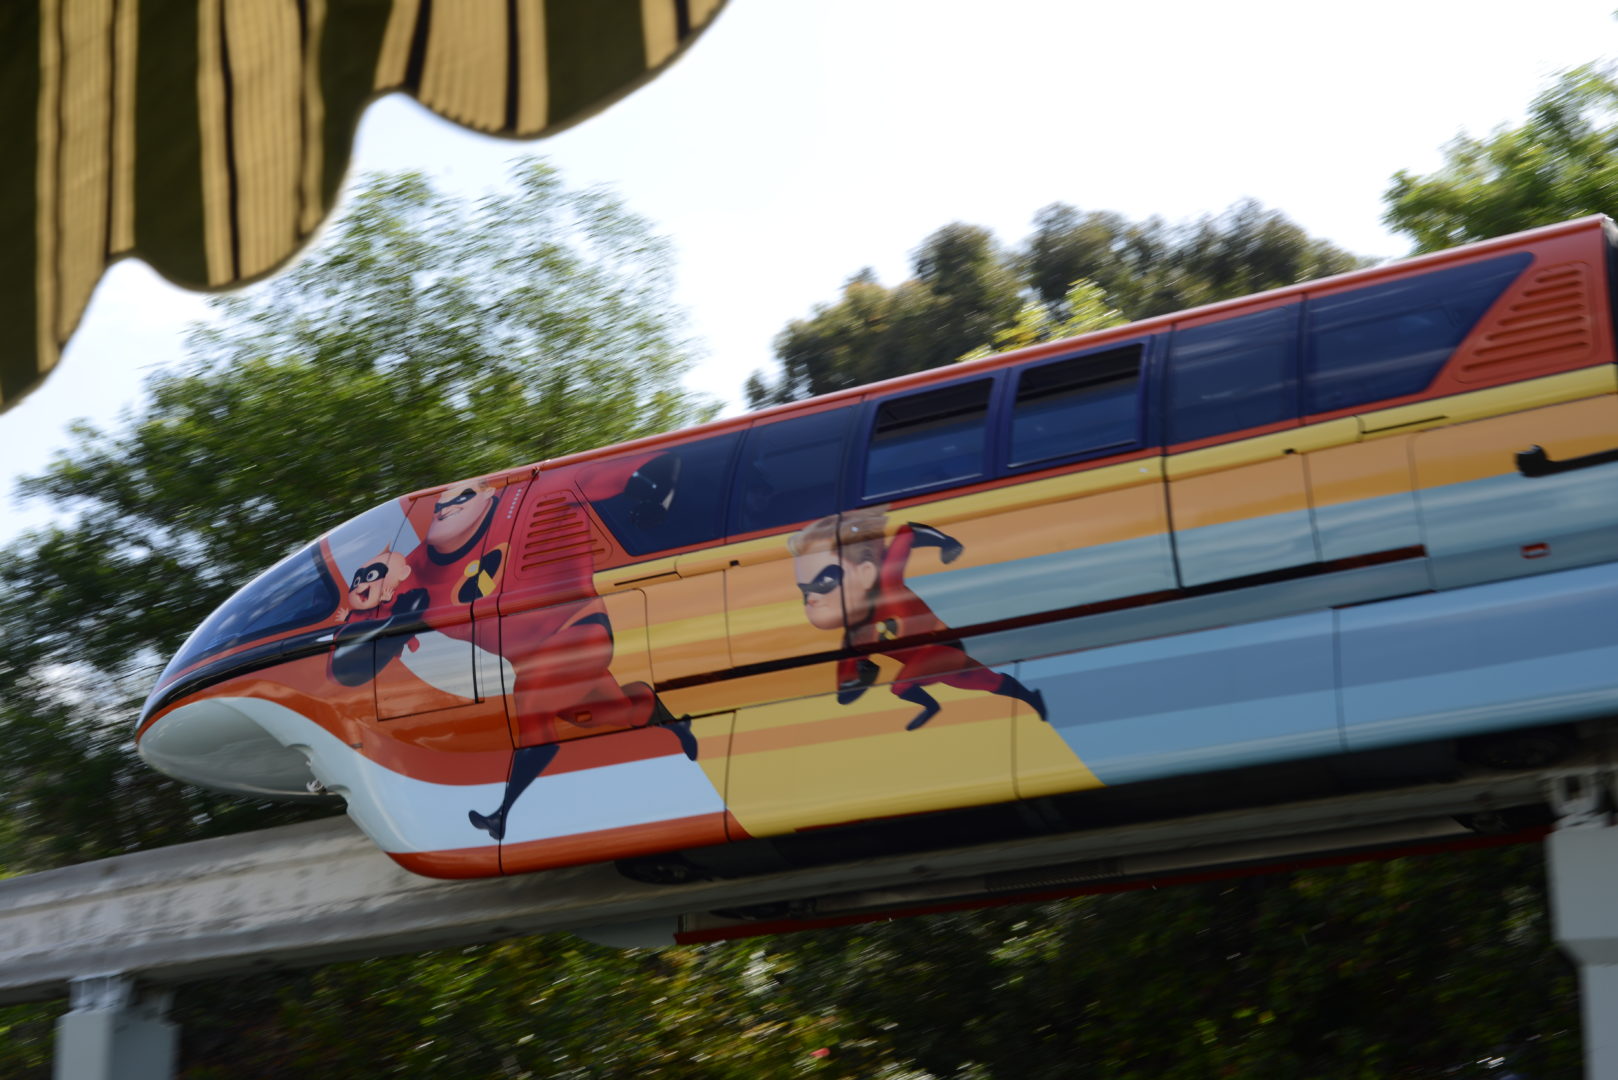 Incredibles Monorail at Disneyland's Pixar Fest